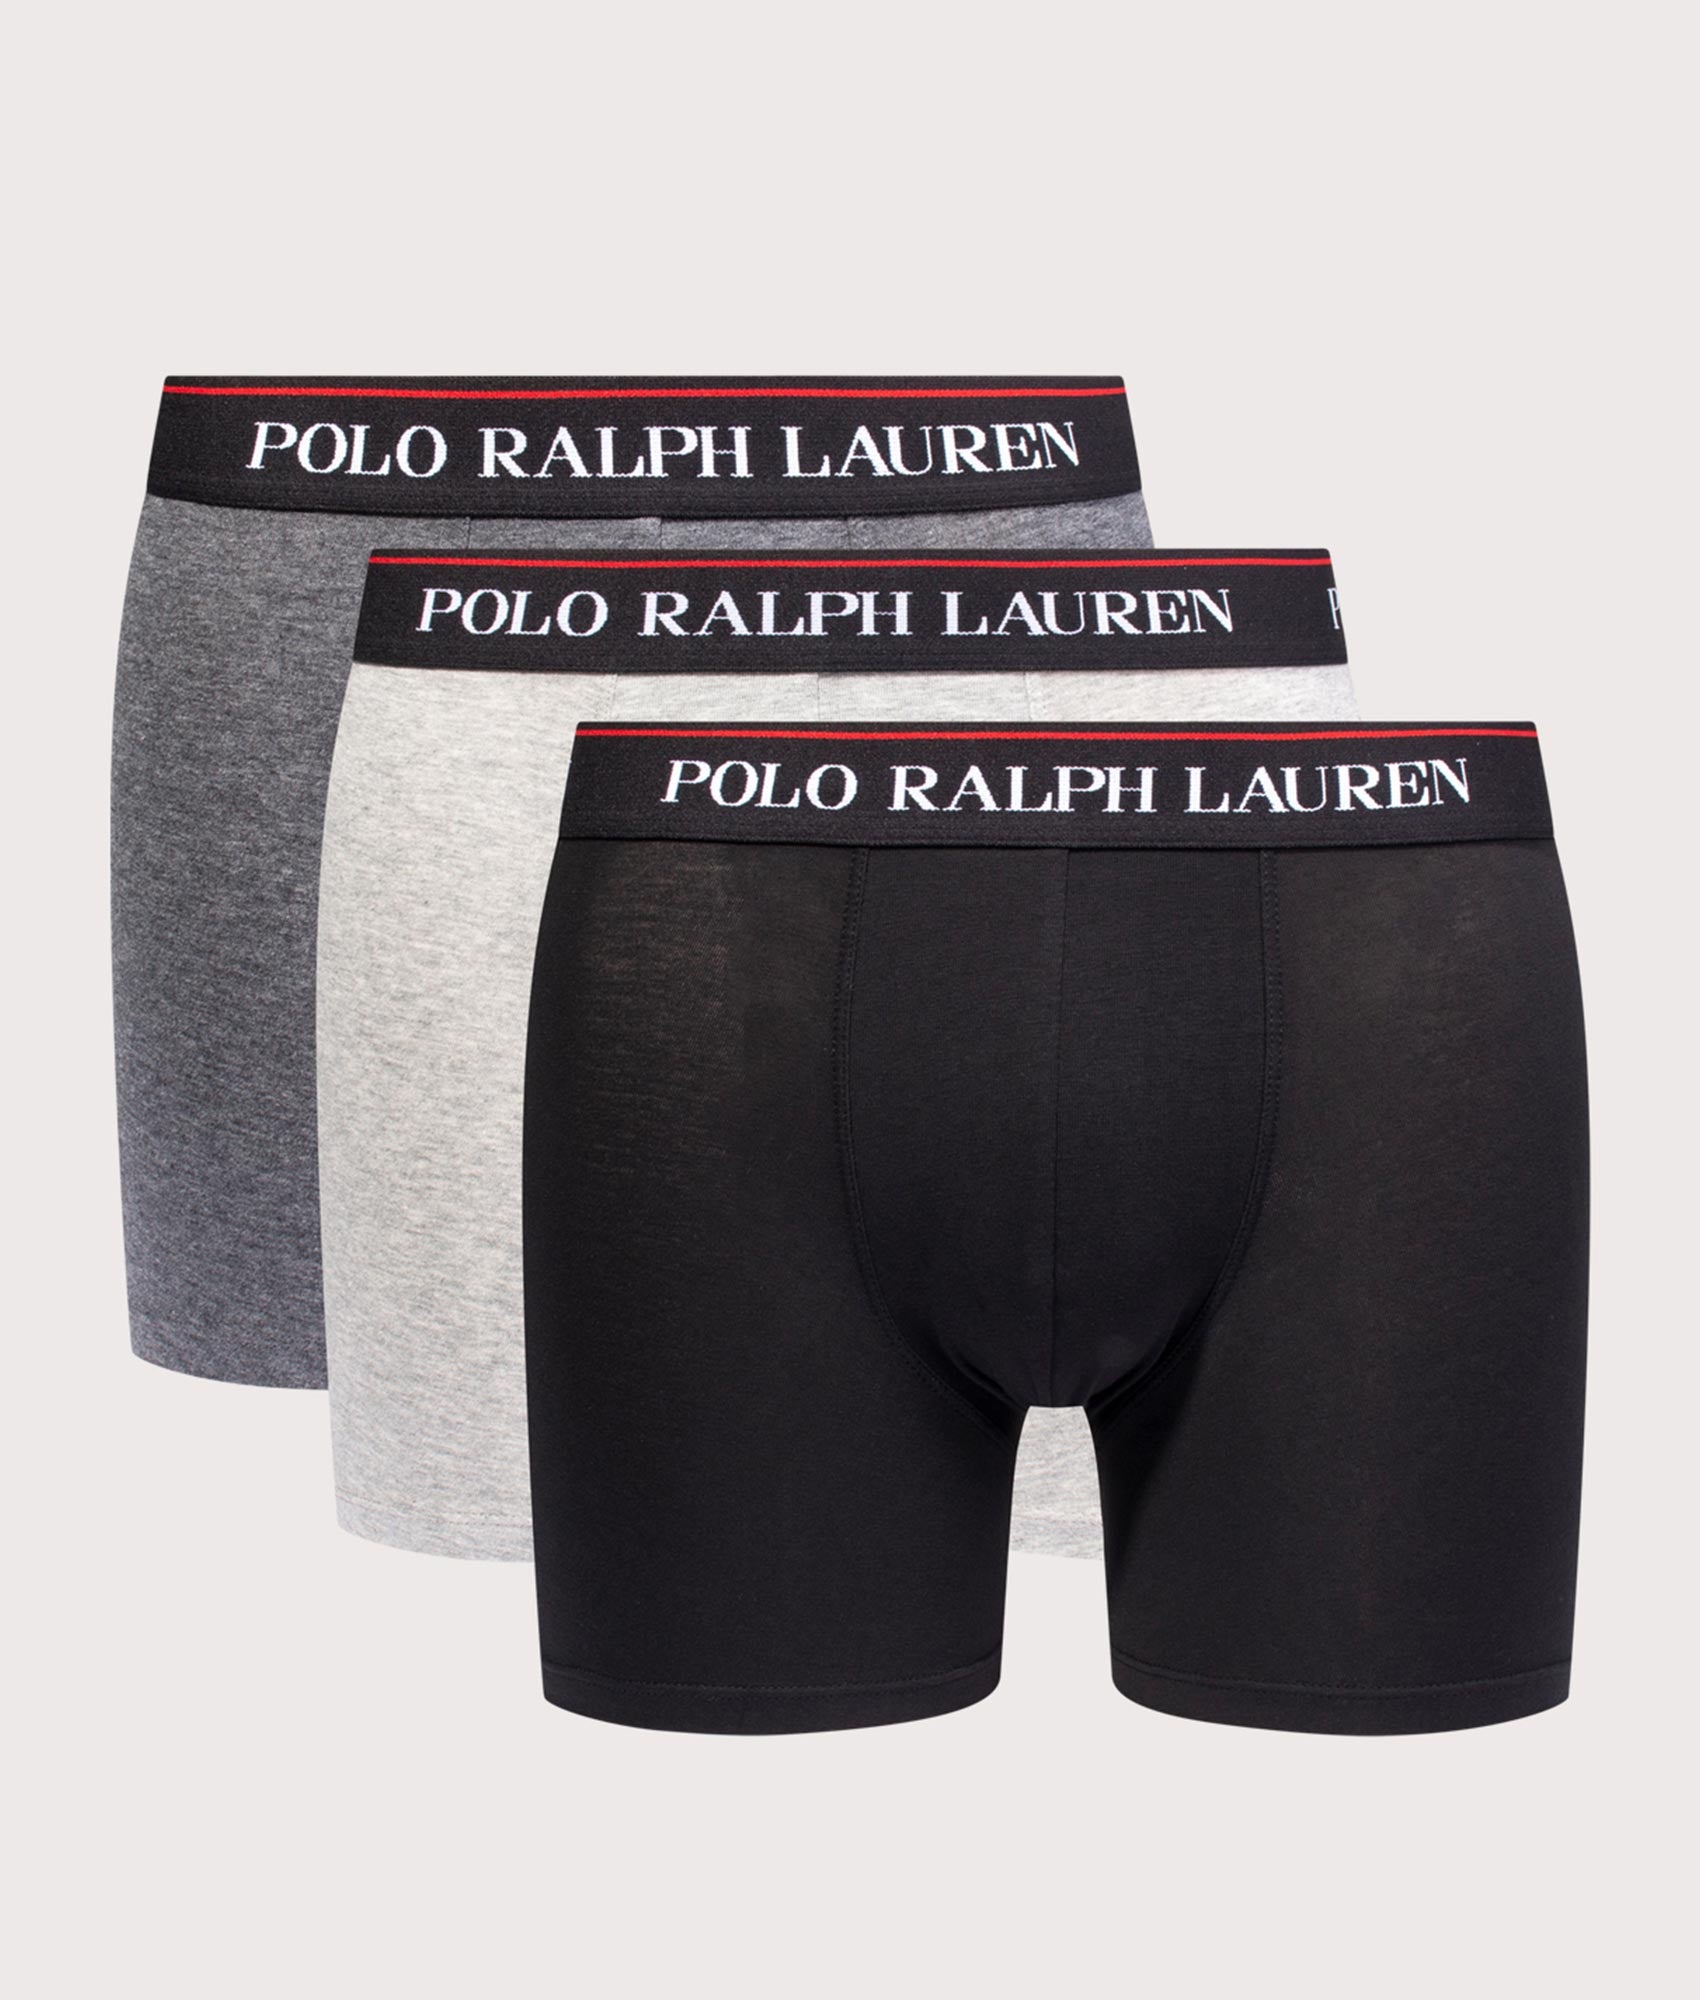 3 Pack Cotton Boxer Briefs Black Charcoal Polo Ralph Lauren